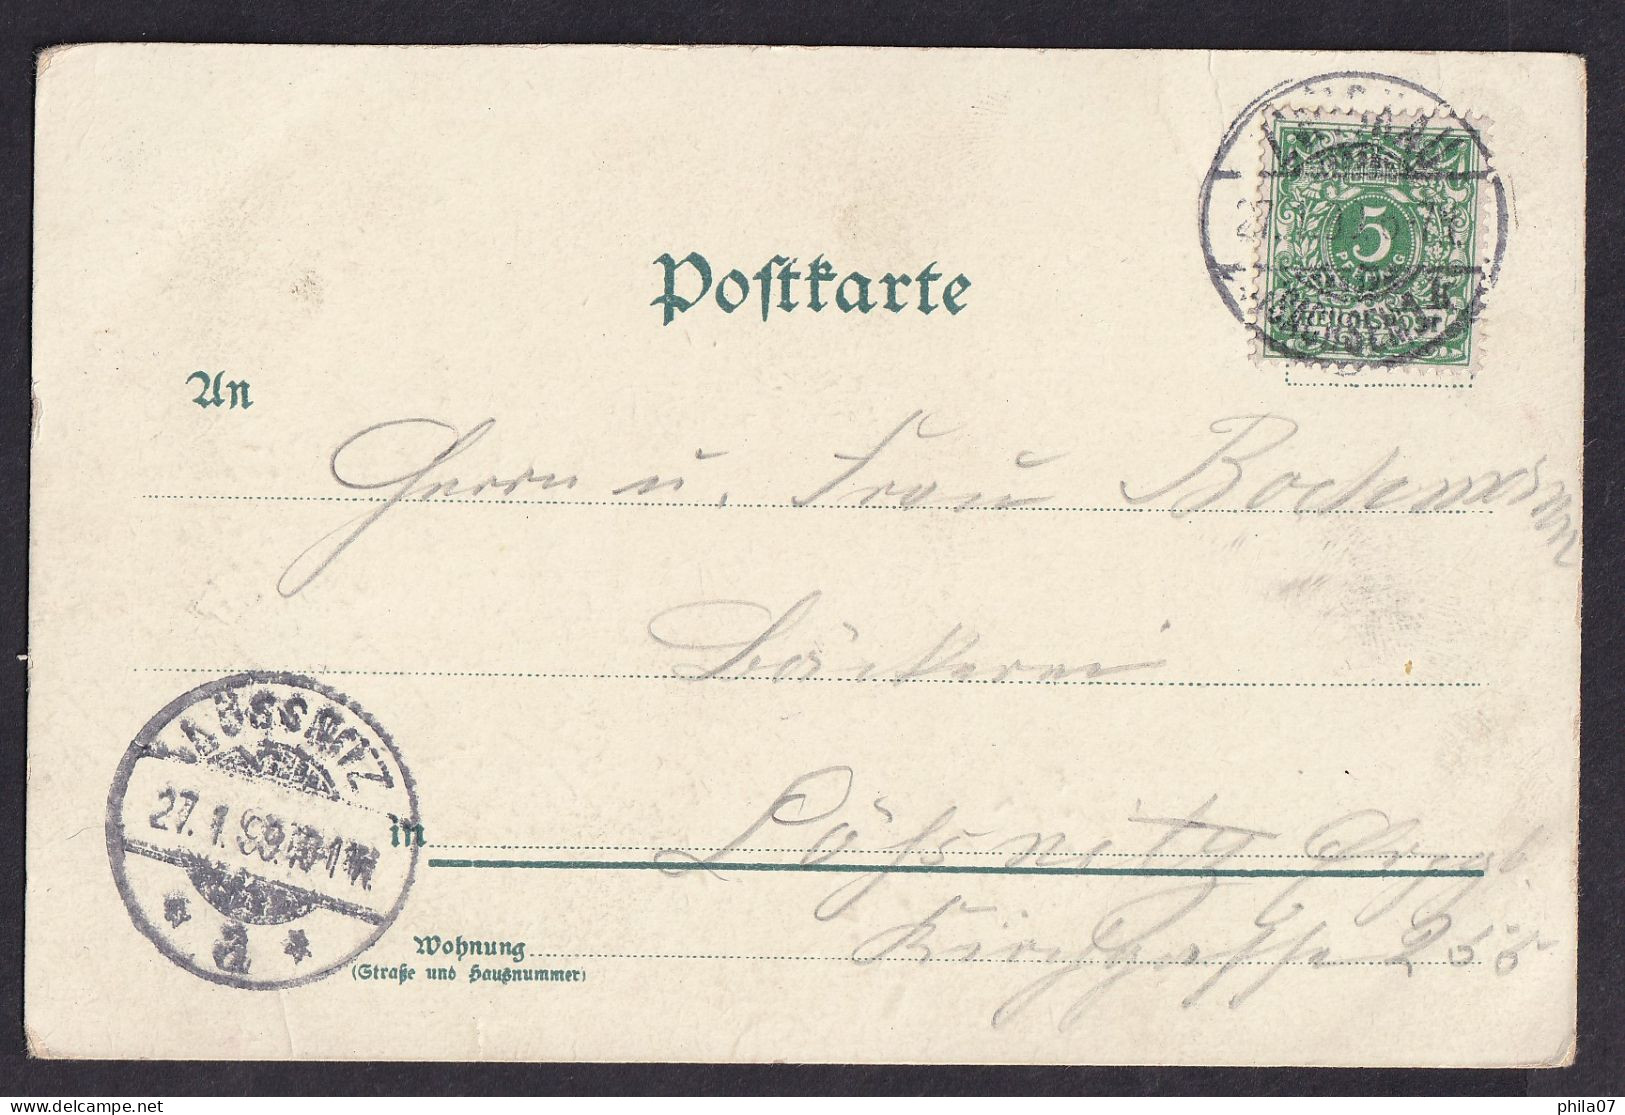 Gruss Aus ... / Wenn Ich Schreibe Kurz Und Bundig... / Year 1899 / Long Line Postcard Circulated, 2 Scans - Souvenir De...